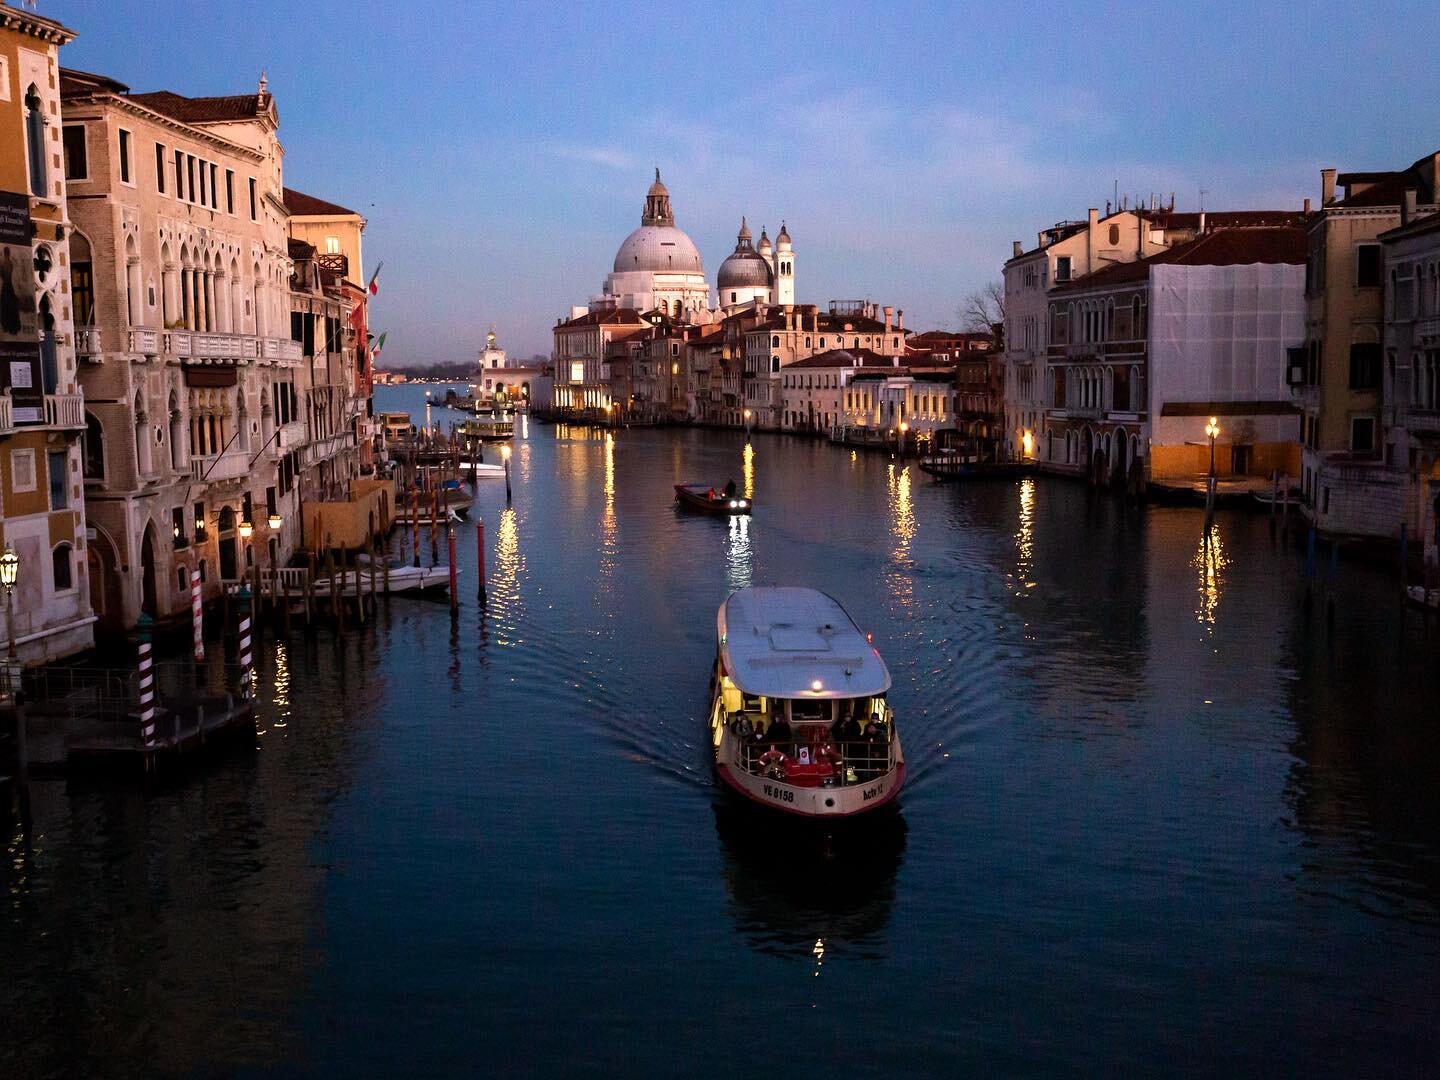 🇮🇹 
Venice, Italy 
2022